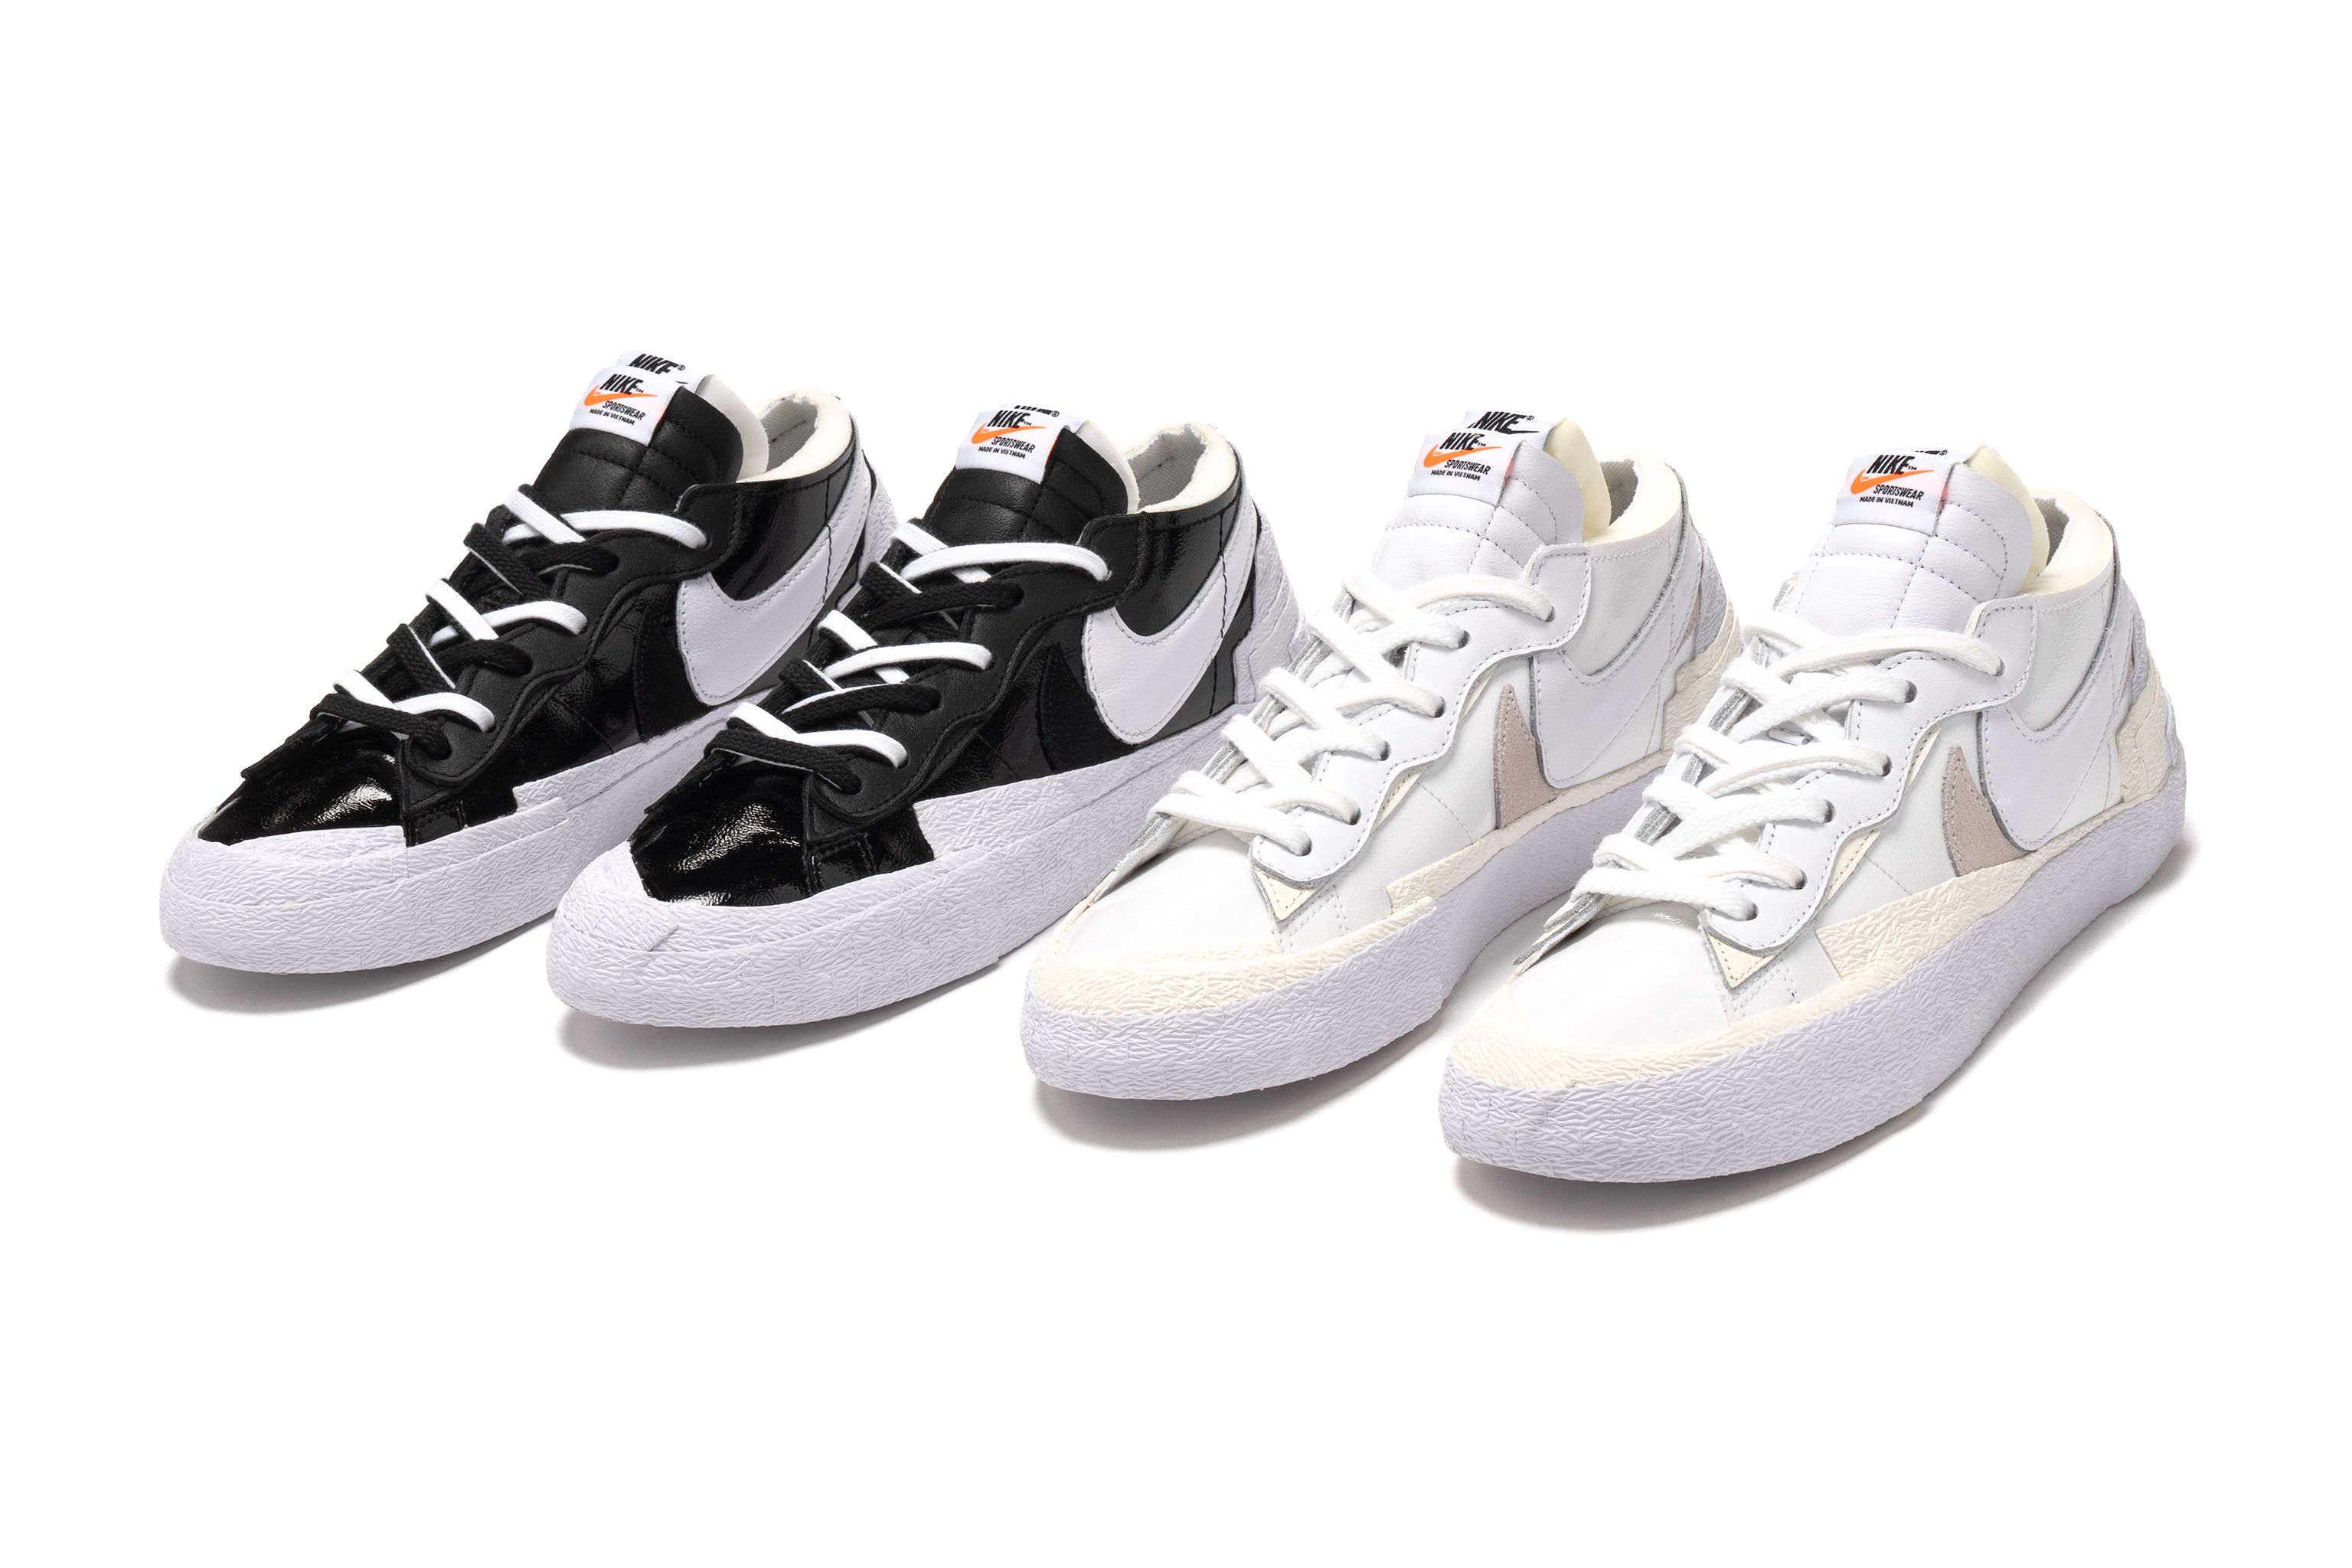 Nike x Sacai Blazer Low 'Black/White' & 'White/Sail' | Release